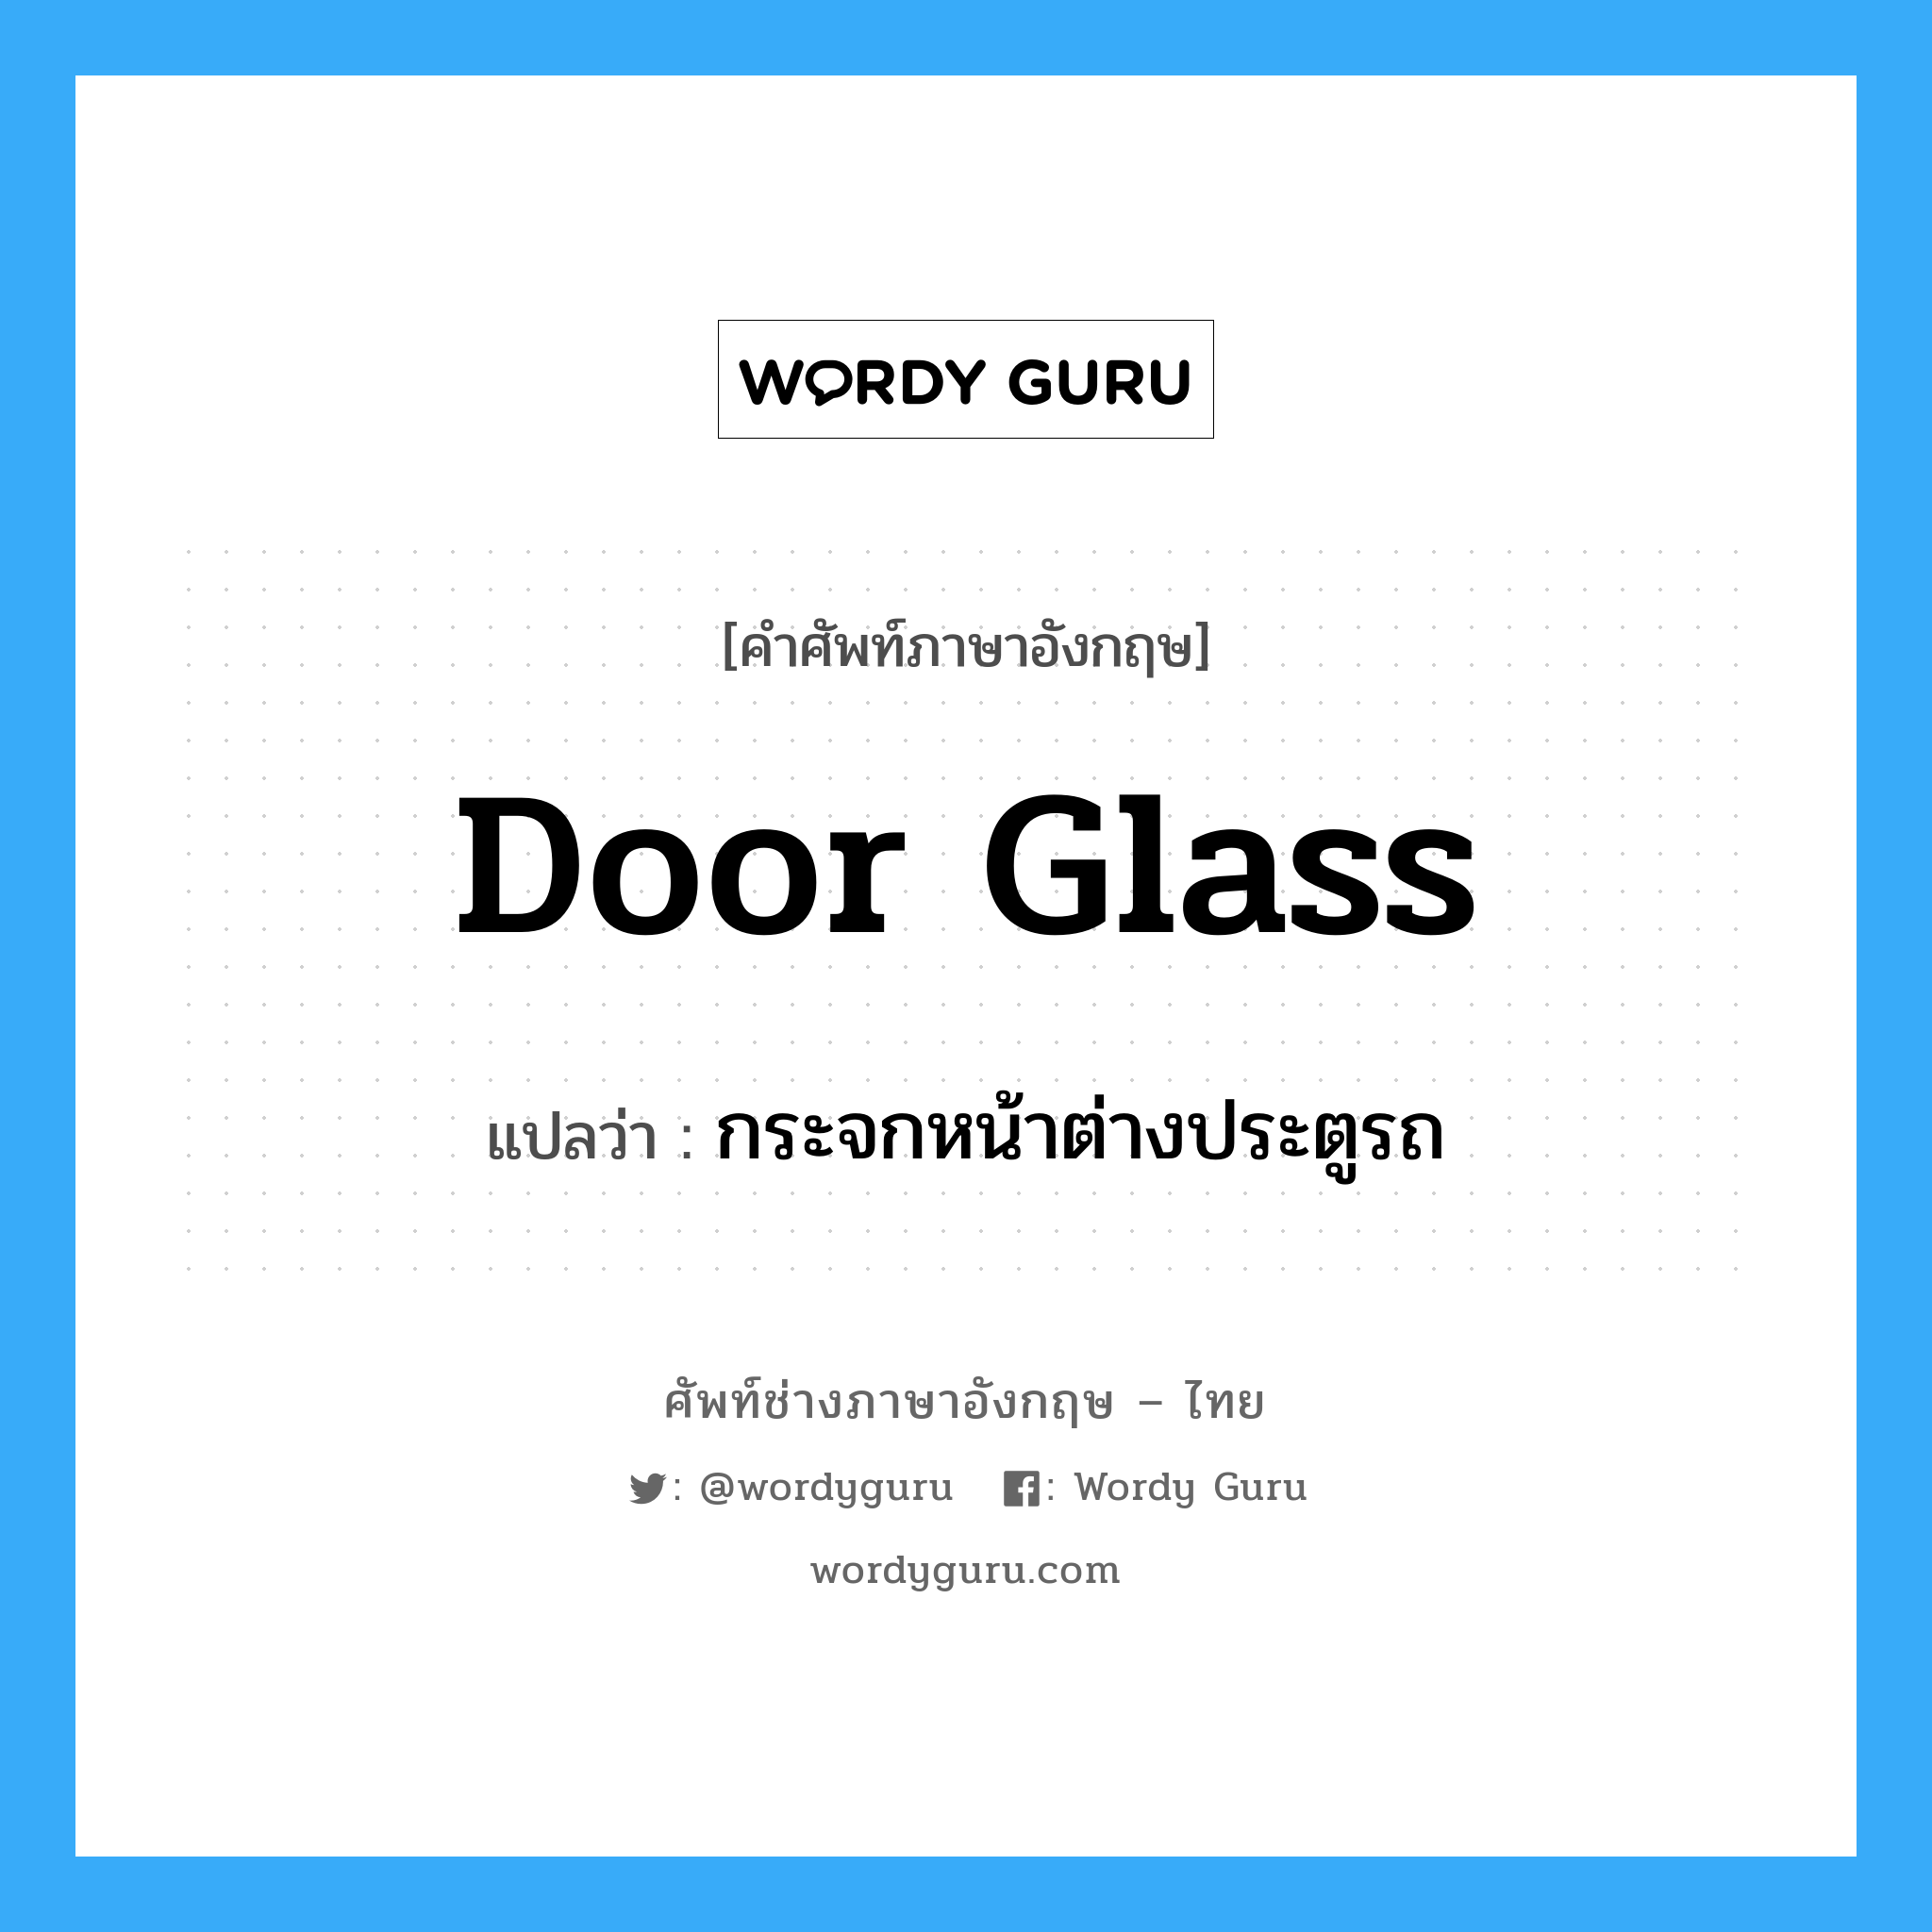 กระจกหน้าต่างประตูรถ ภาษาอังกฤษ?, คำศัพท์ช่างภาษาอังกฤษ - ไทย กระจกหน้าต่างประตูรถ คำศัพท์ภาษาอังกฤษ กระจกหน้าต่างประตูรถ แปลว่า door glass